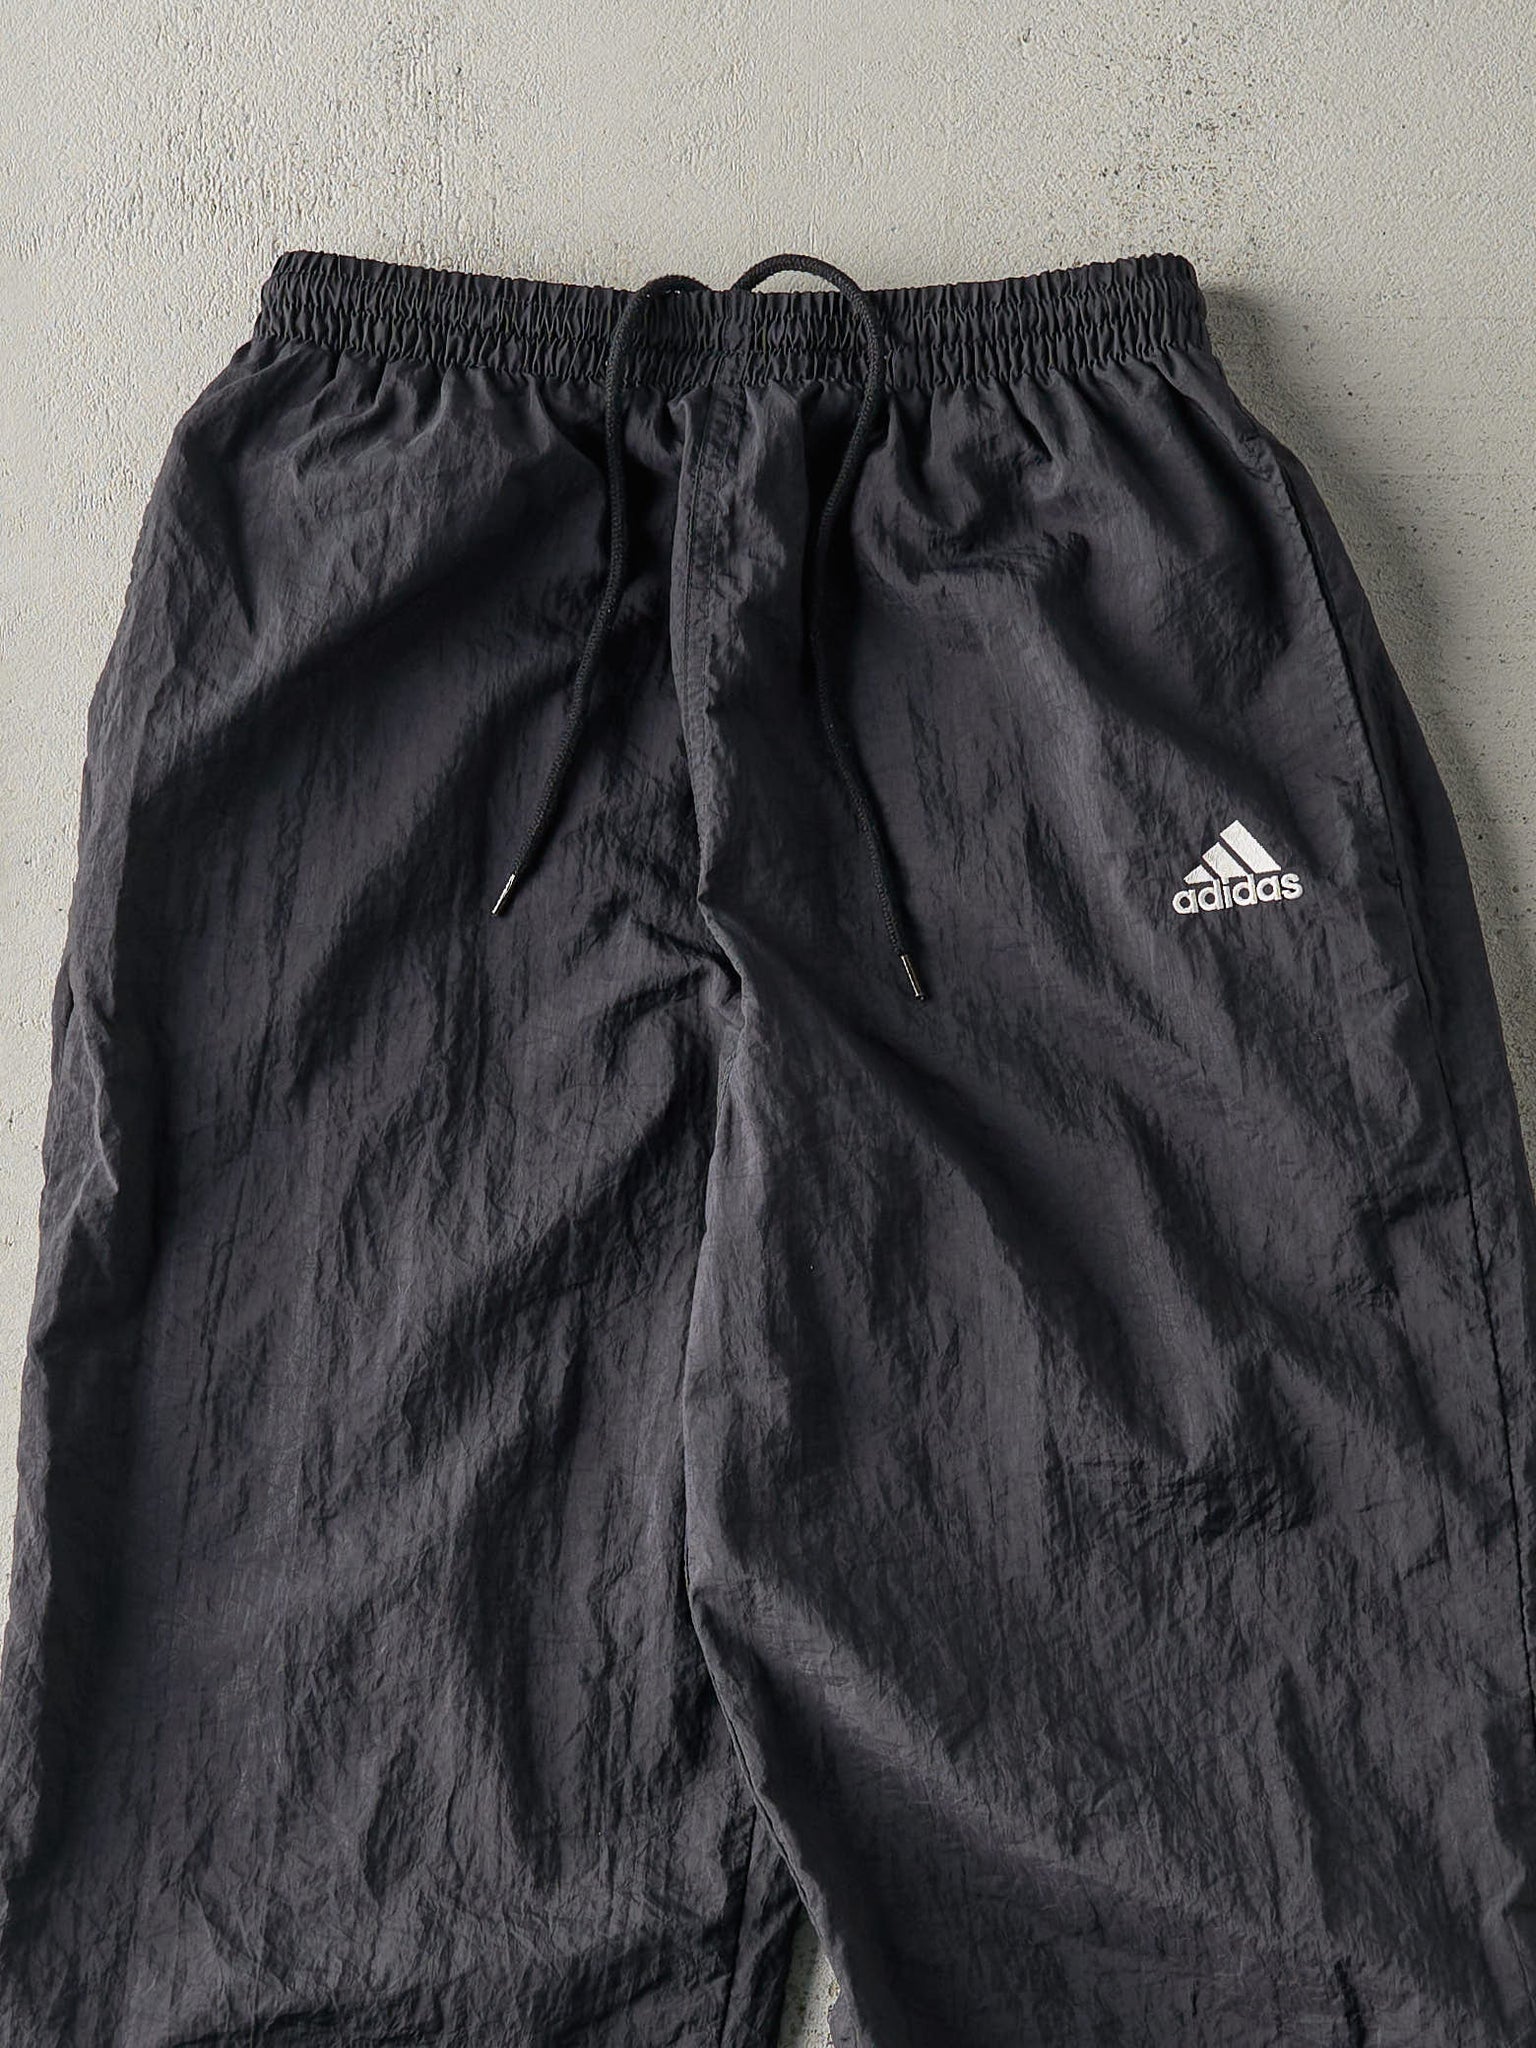 Vintage 90s Black Embroidered Adidas Windbreaker Pants (26x30)